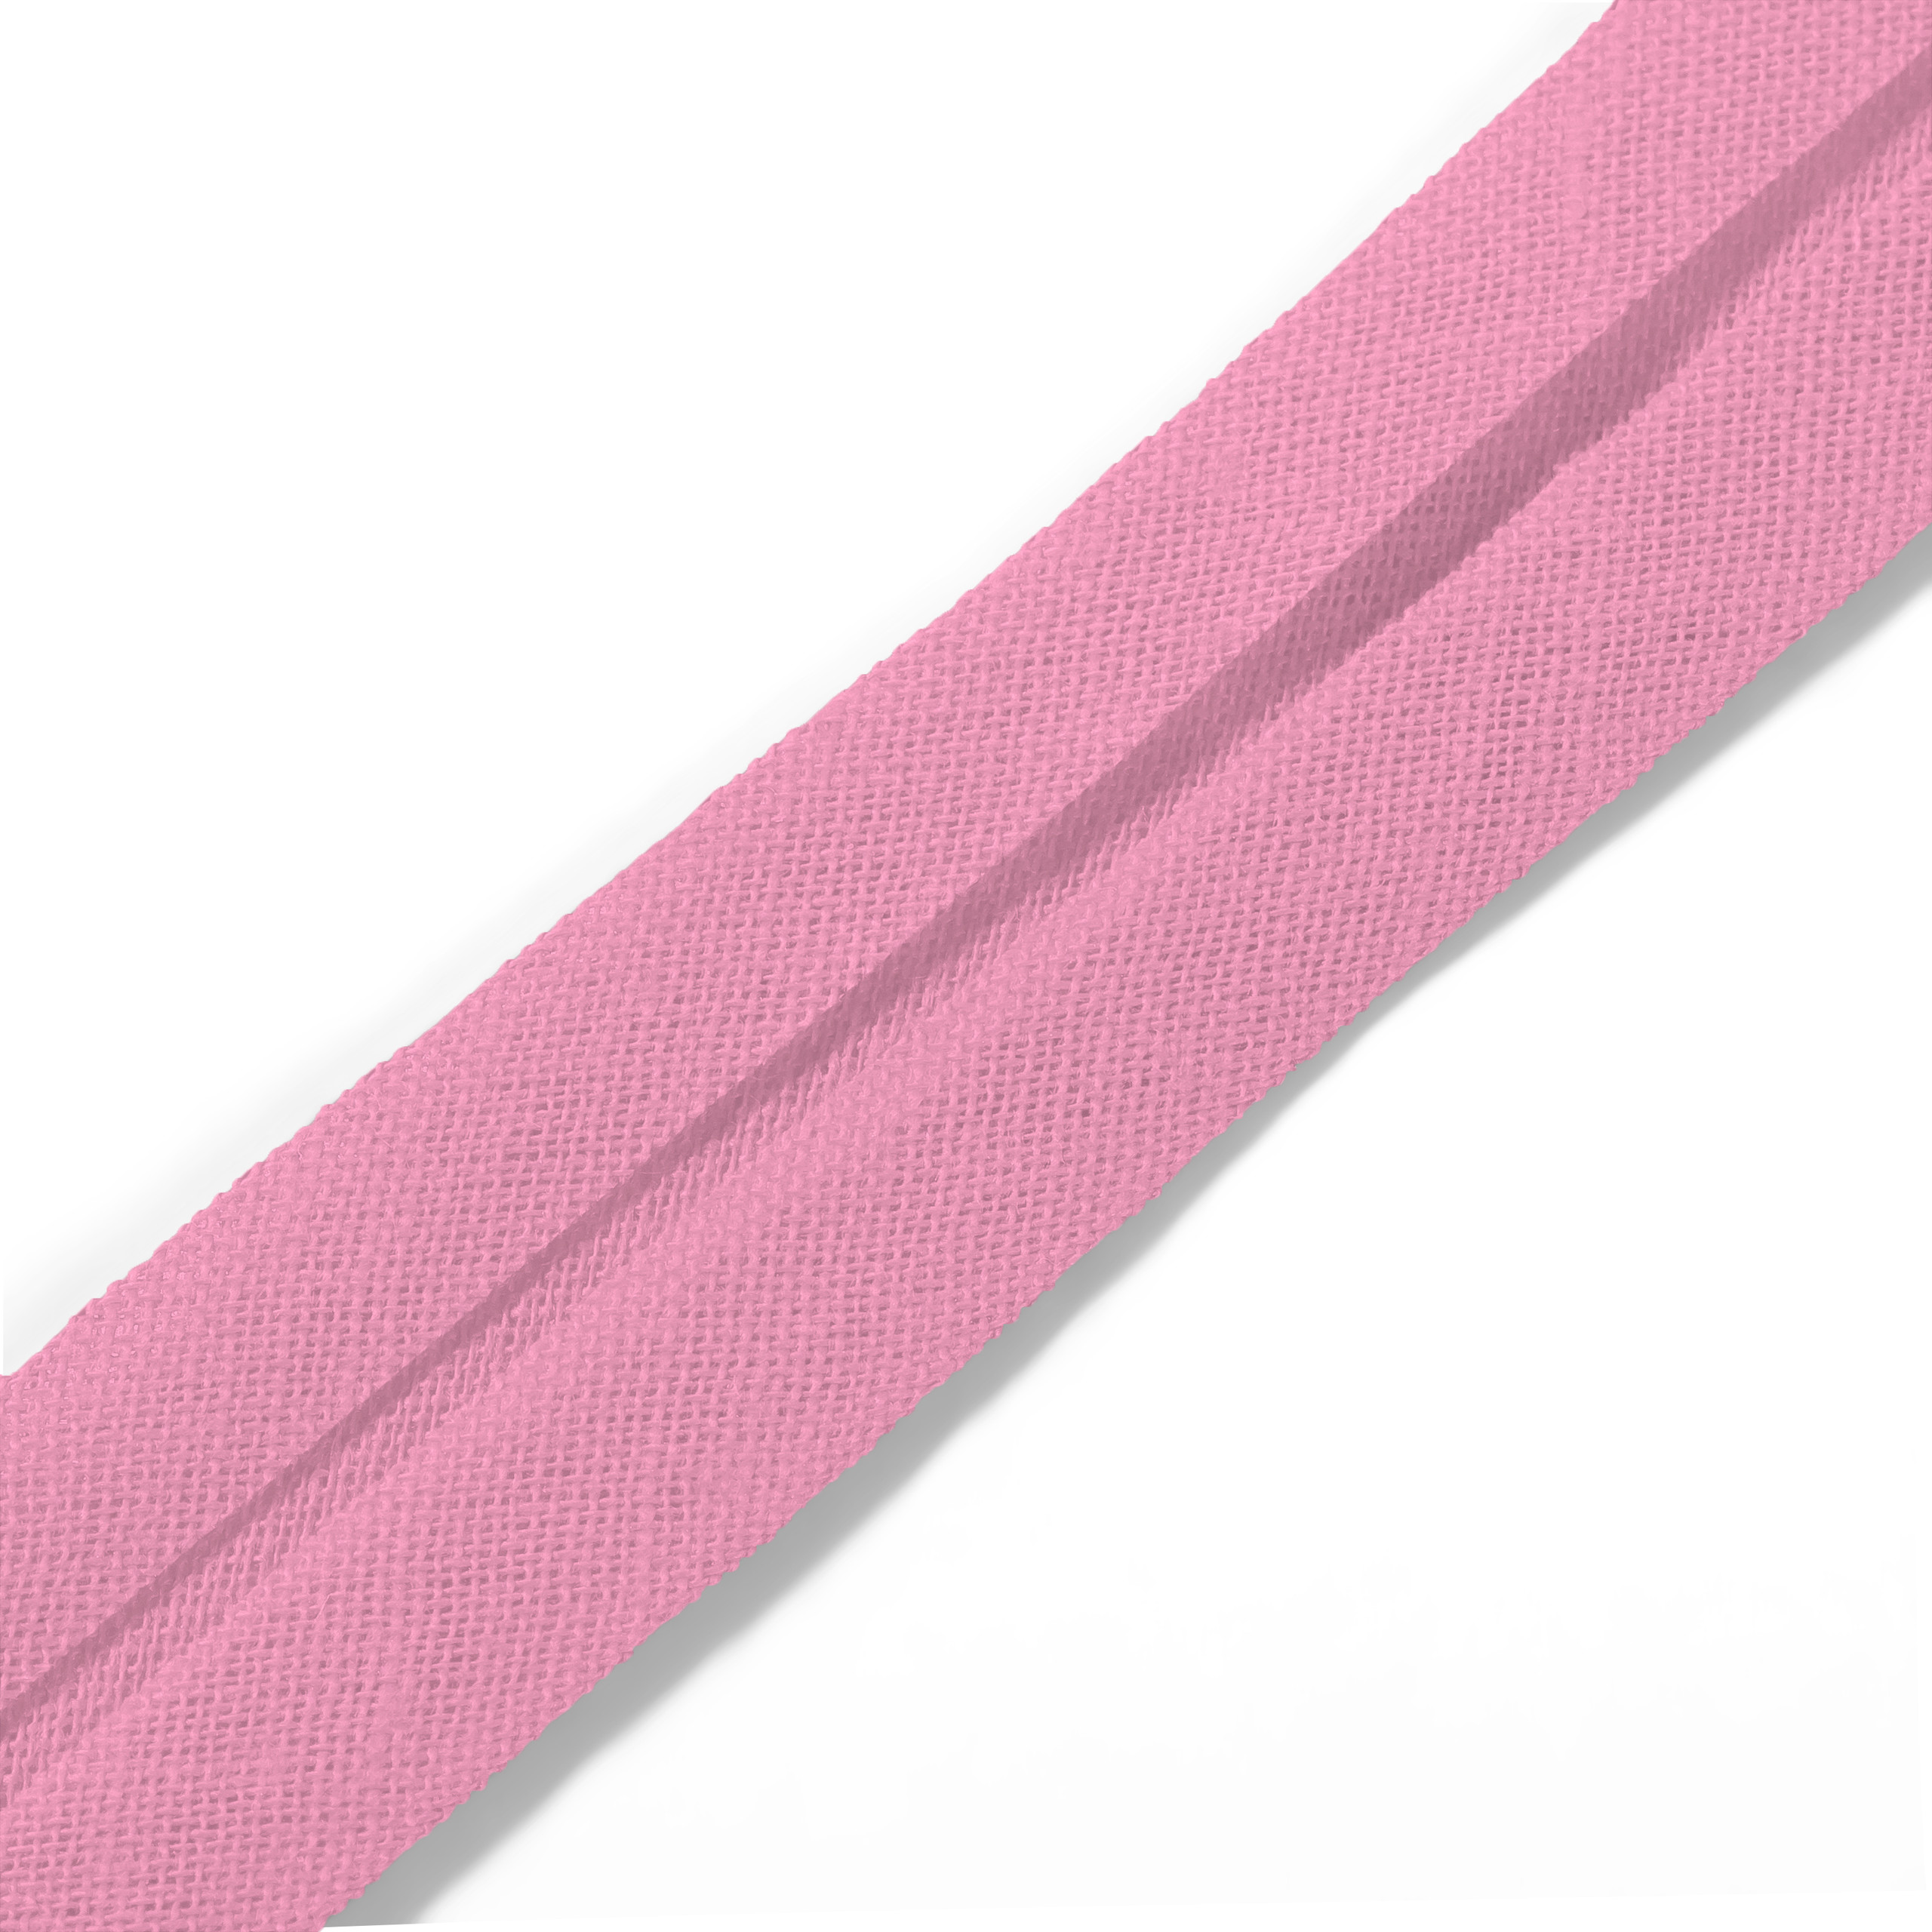 Schrägband 40/20 mm rosa, Meterware, Baumwolle, Prym , Einfassband